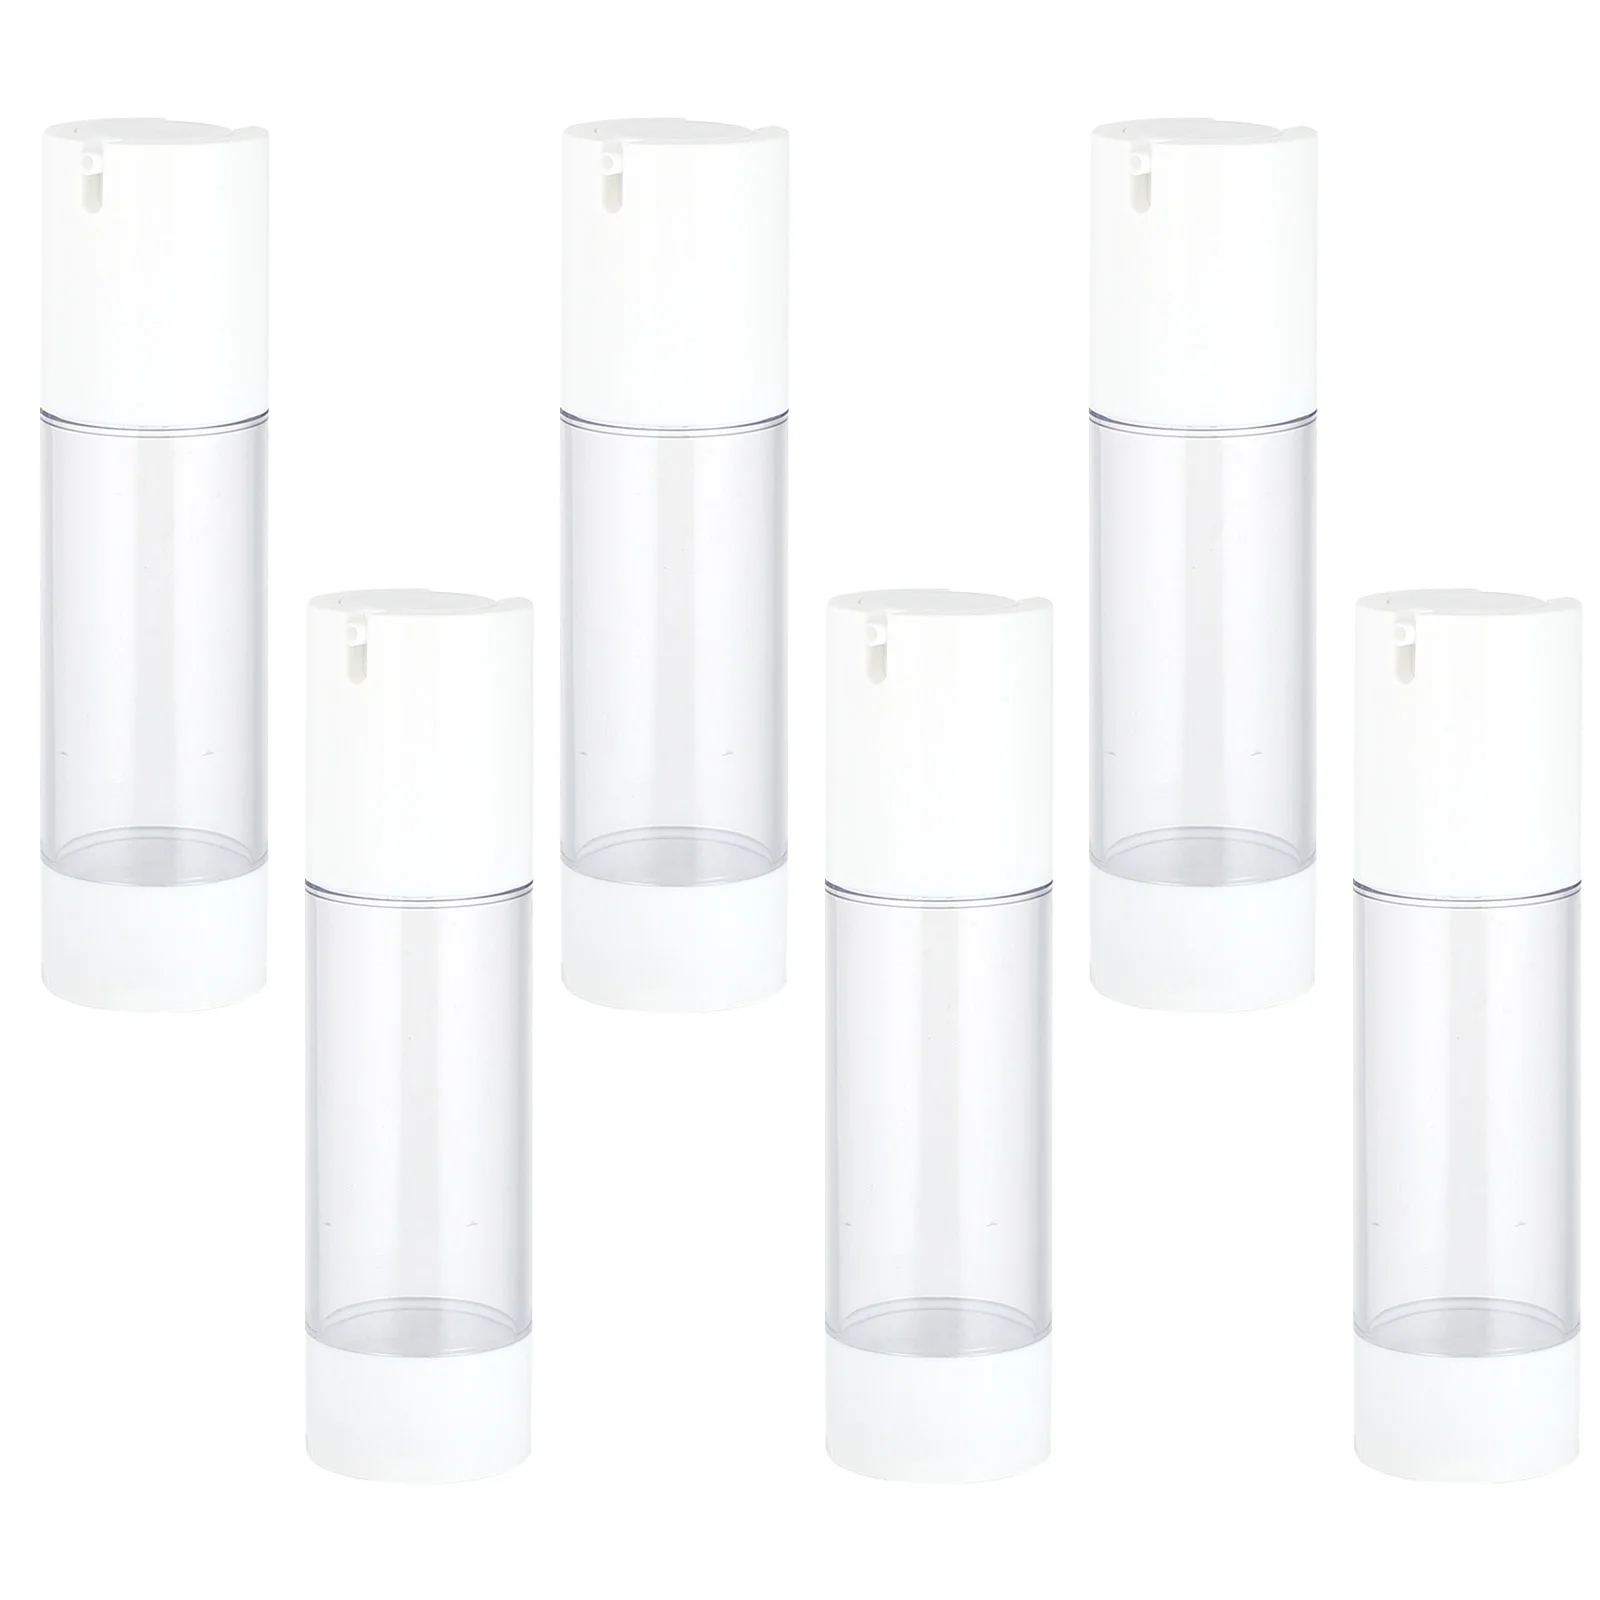 6 Pcs Lotion Vacuum Bottle Travel Cosmetics Container Plastic Go Containers Liquid Wash